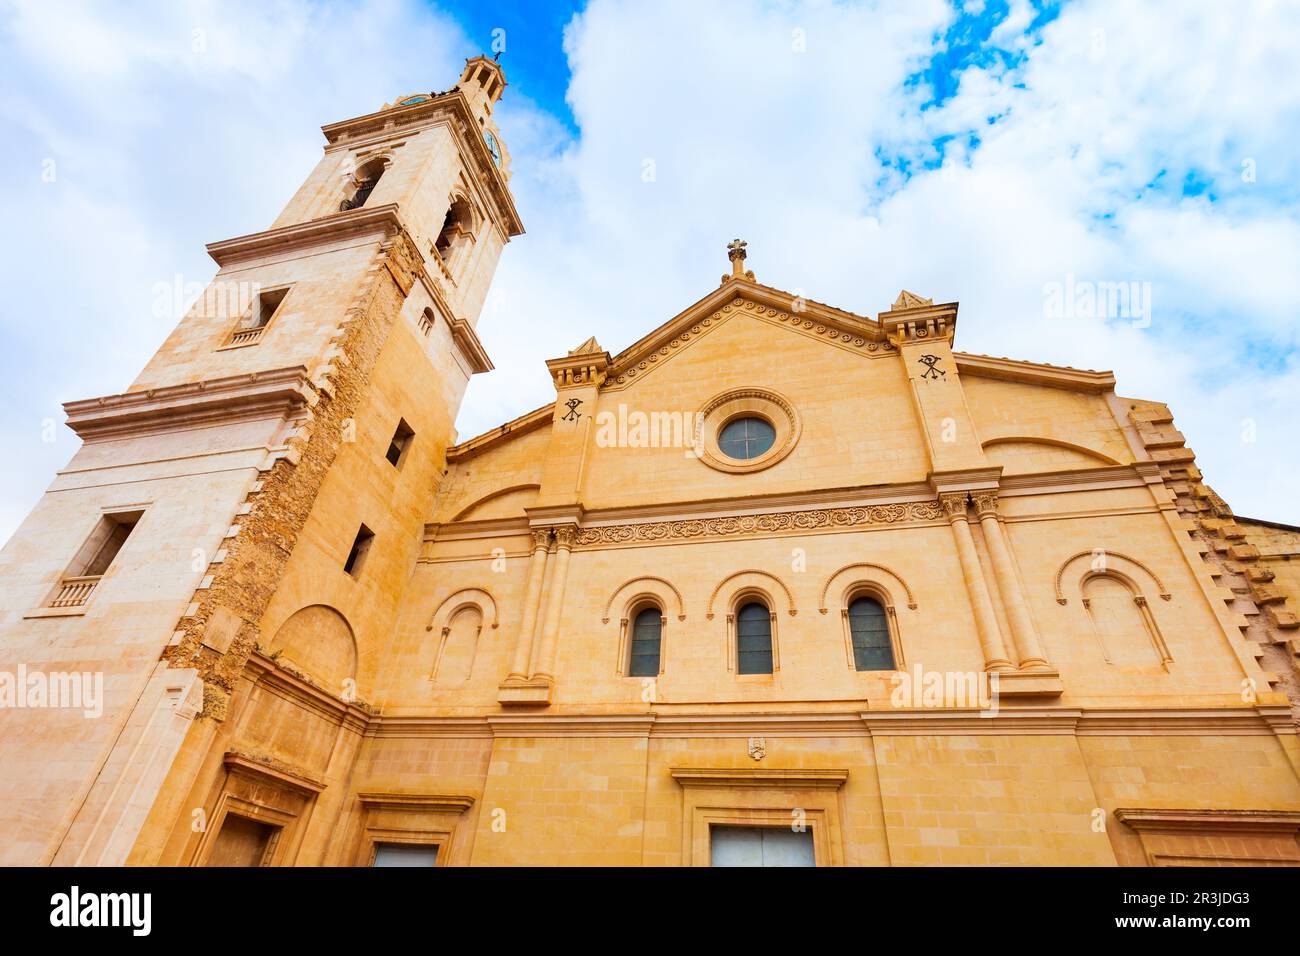 La Collégiale Basilique de Santa Maria de Xativa, également connue sous le nom de la Seu est la principale église de la ville de Xativa près de Valence en Espagne. Banque D'Images